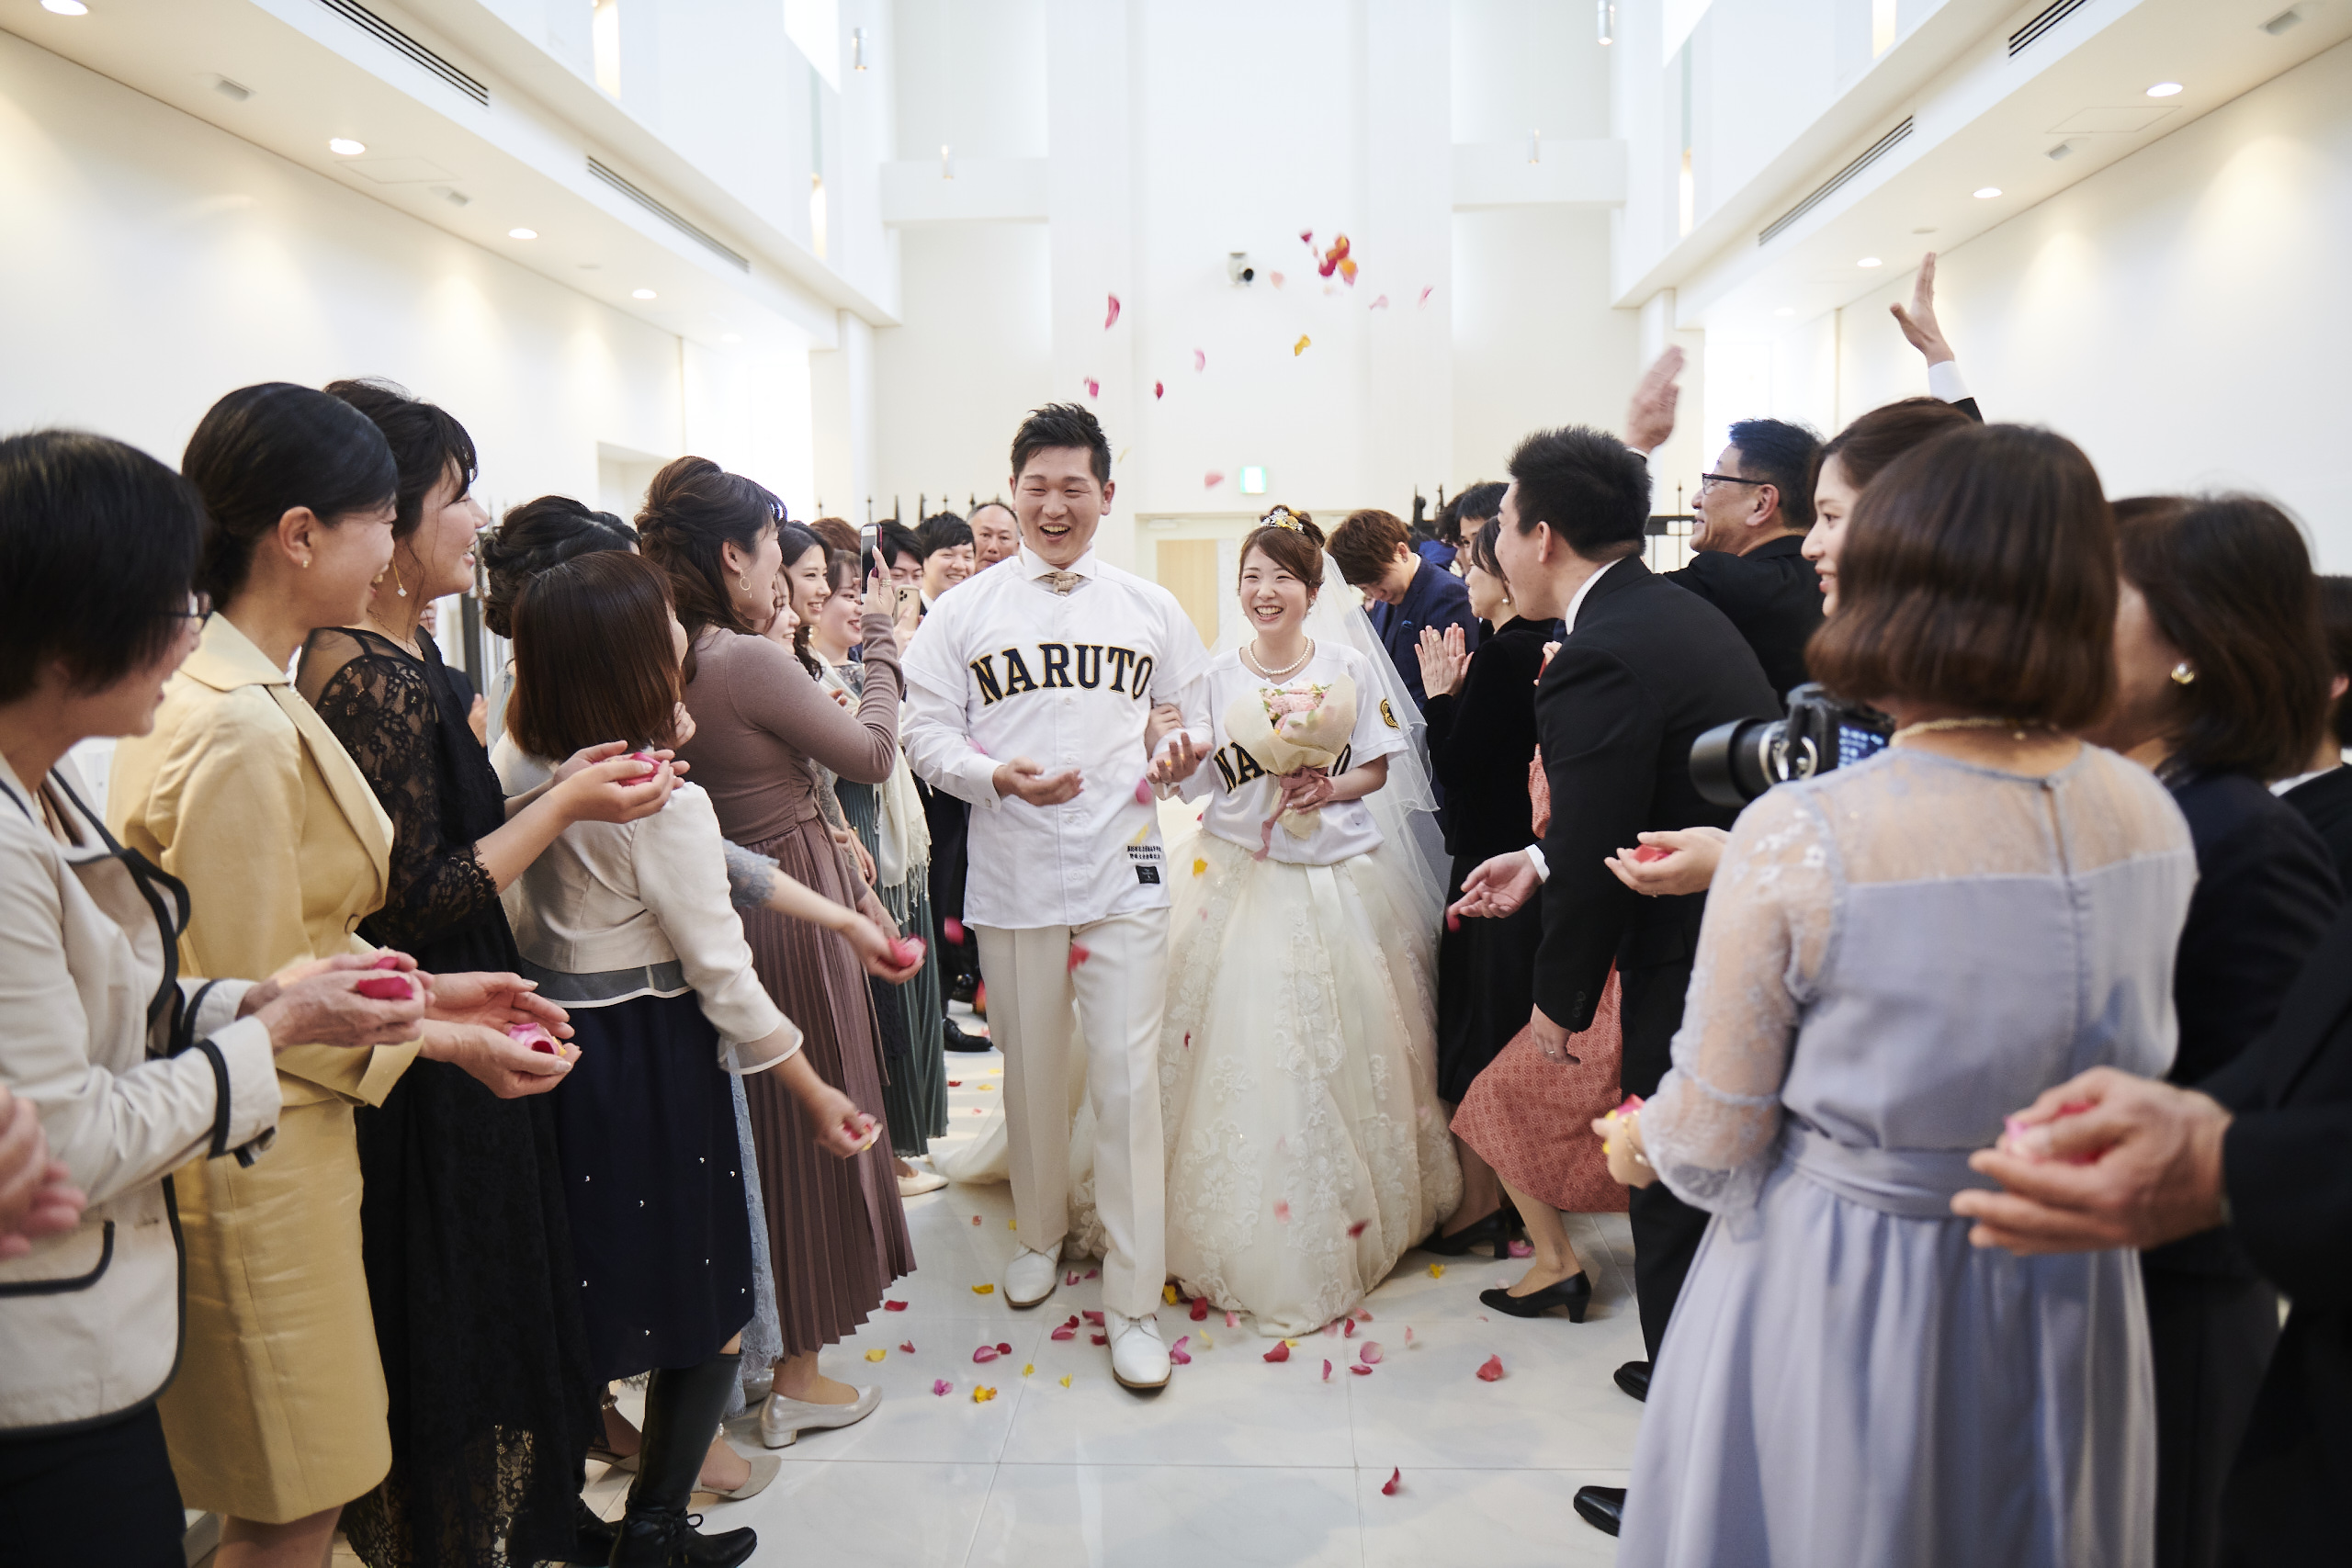 徳島市の結婚式場ブランアンジュで出身校のユニフォームを着て嬉しそうな新郎新婦様